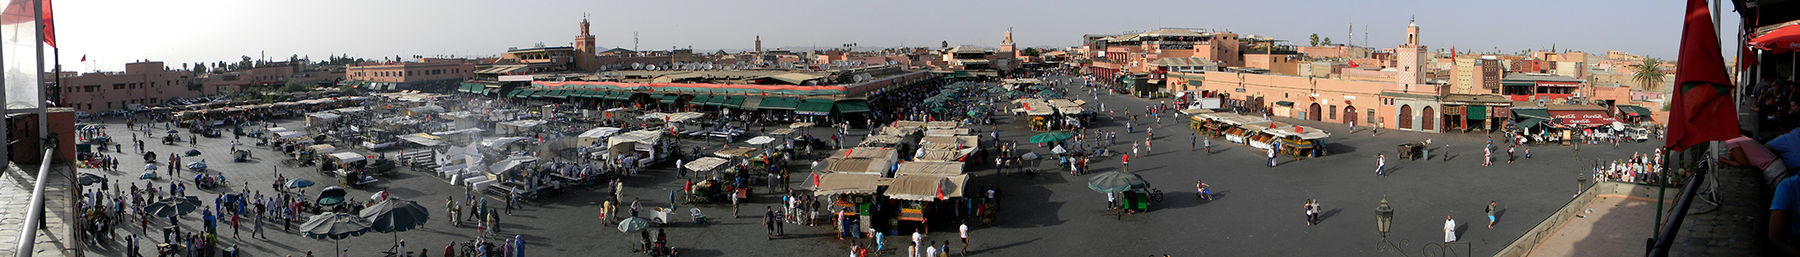 Marrakesh banner.jpg